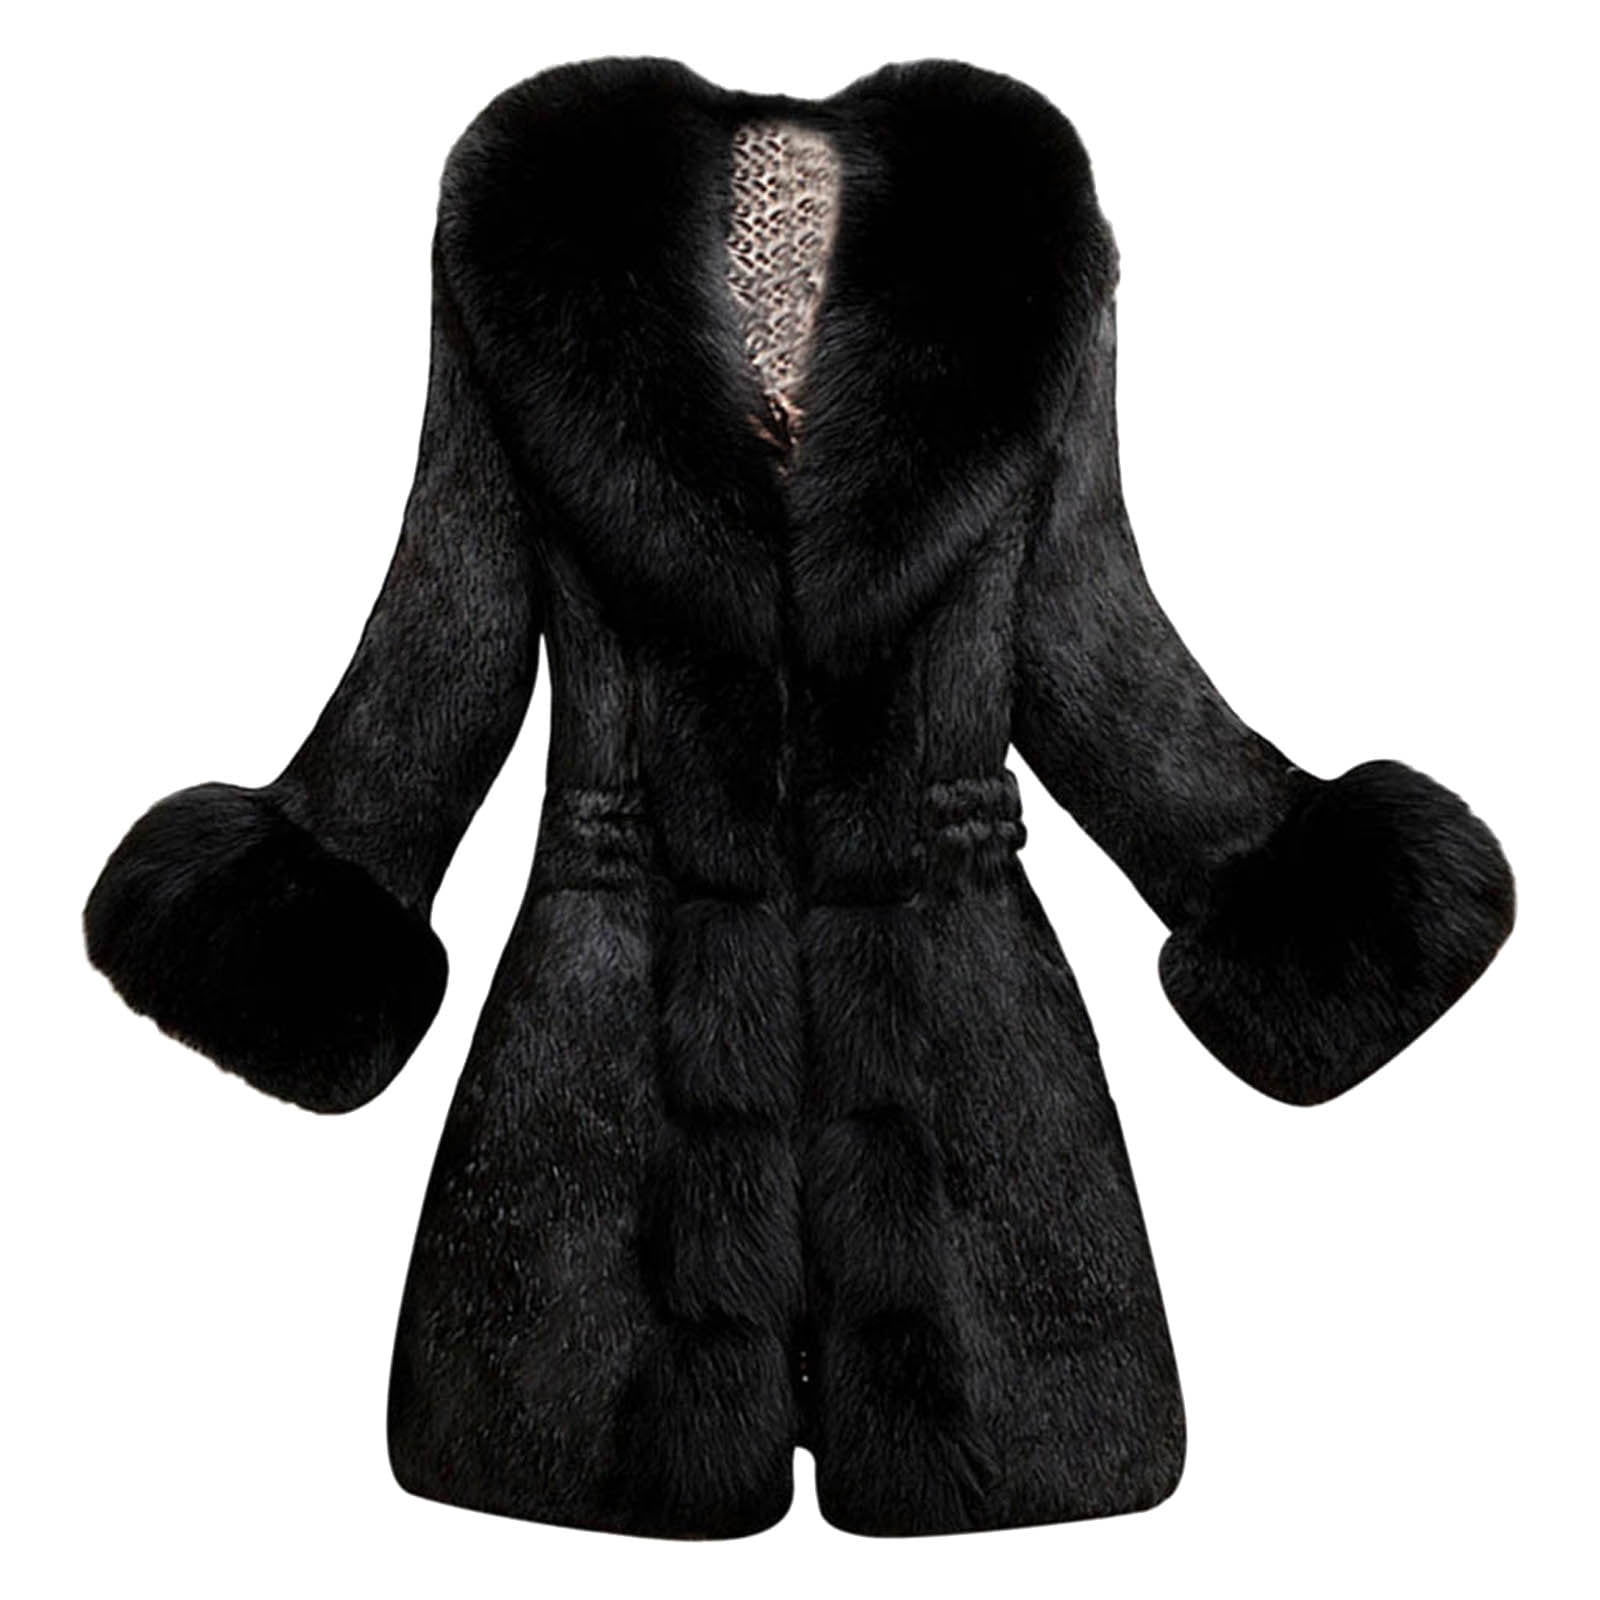 Women's Fashion Faux Fur Jackets Coats Warm Winter Outwear Overcoats US SZ S-6XL